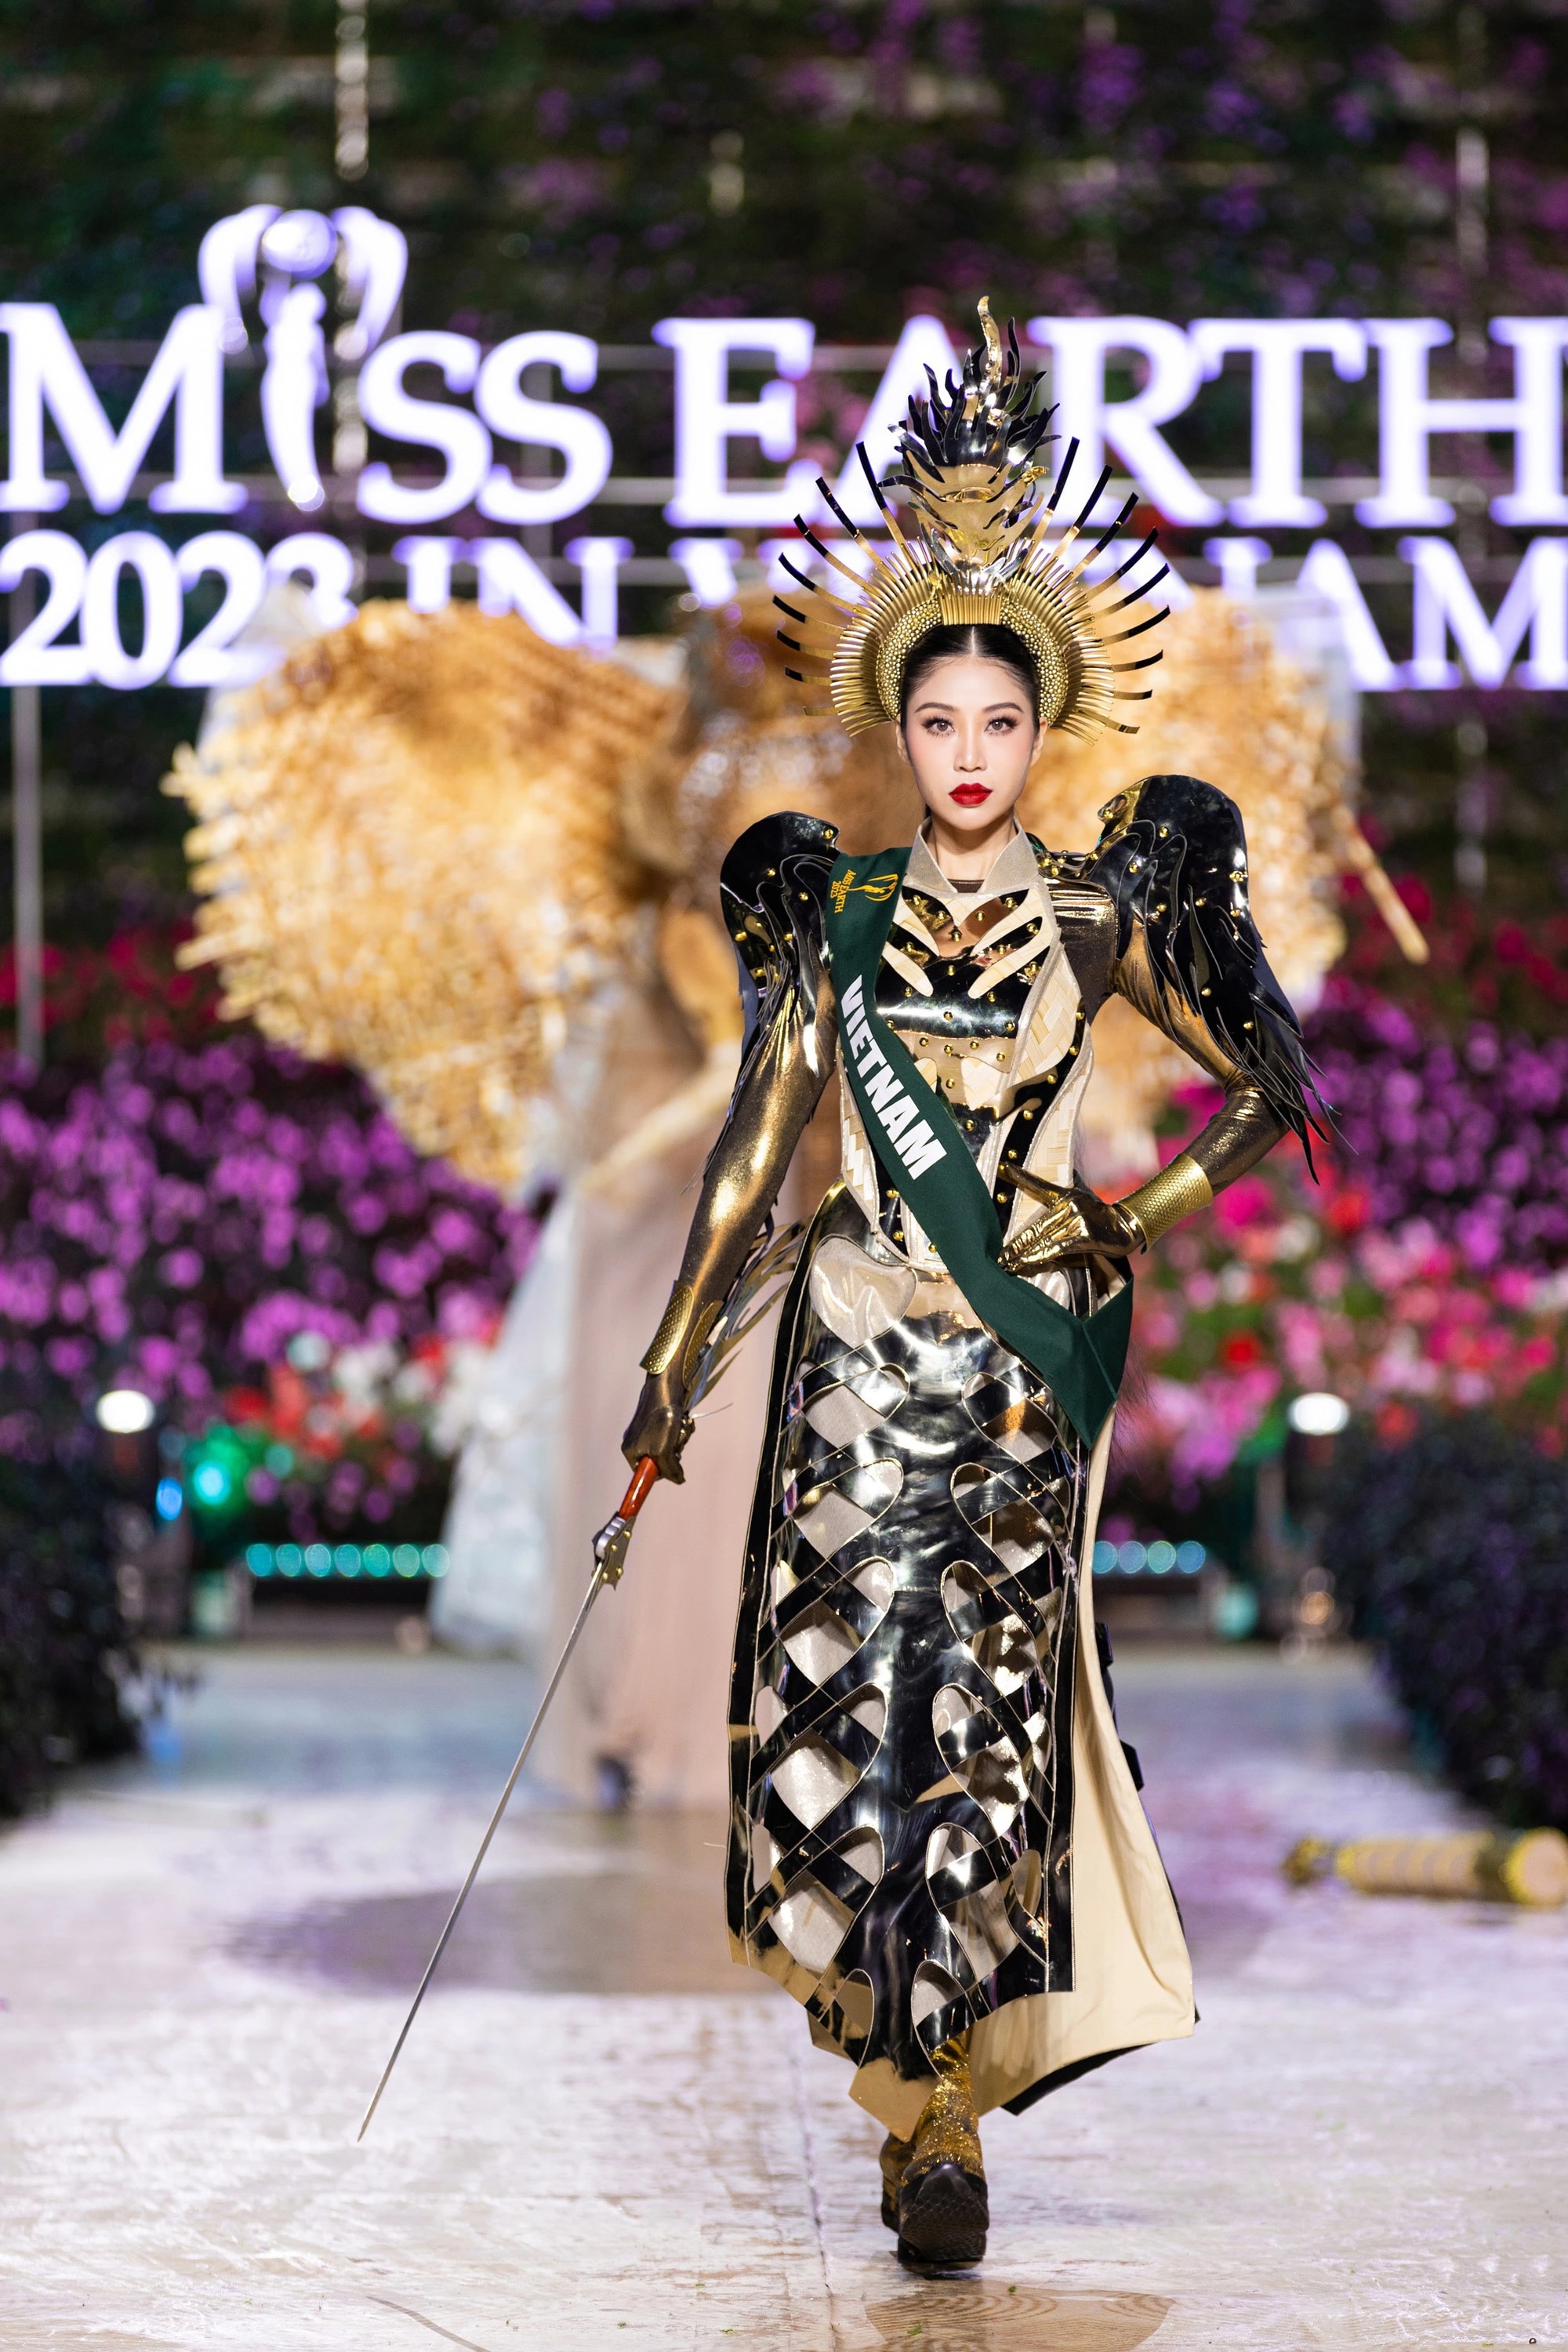 Bán kết Miss Earth 2023 màn trình Trang phục Dân tộc bùng nổ hình ảnh cỏ hoa, muông thú - Ảnh 4.